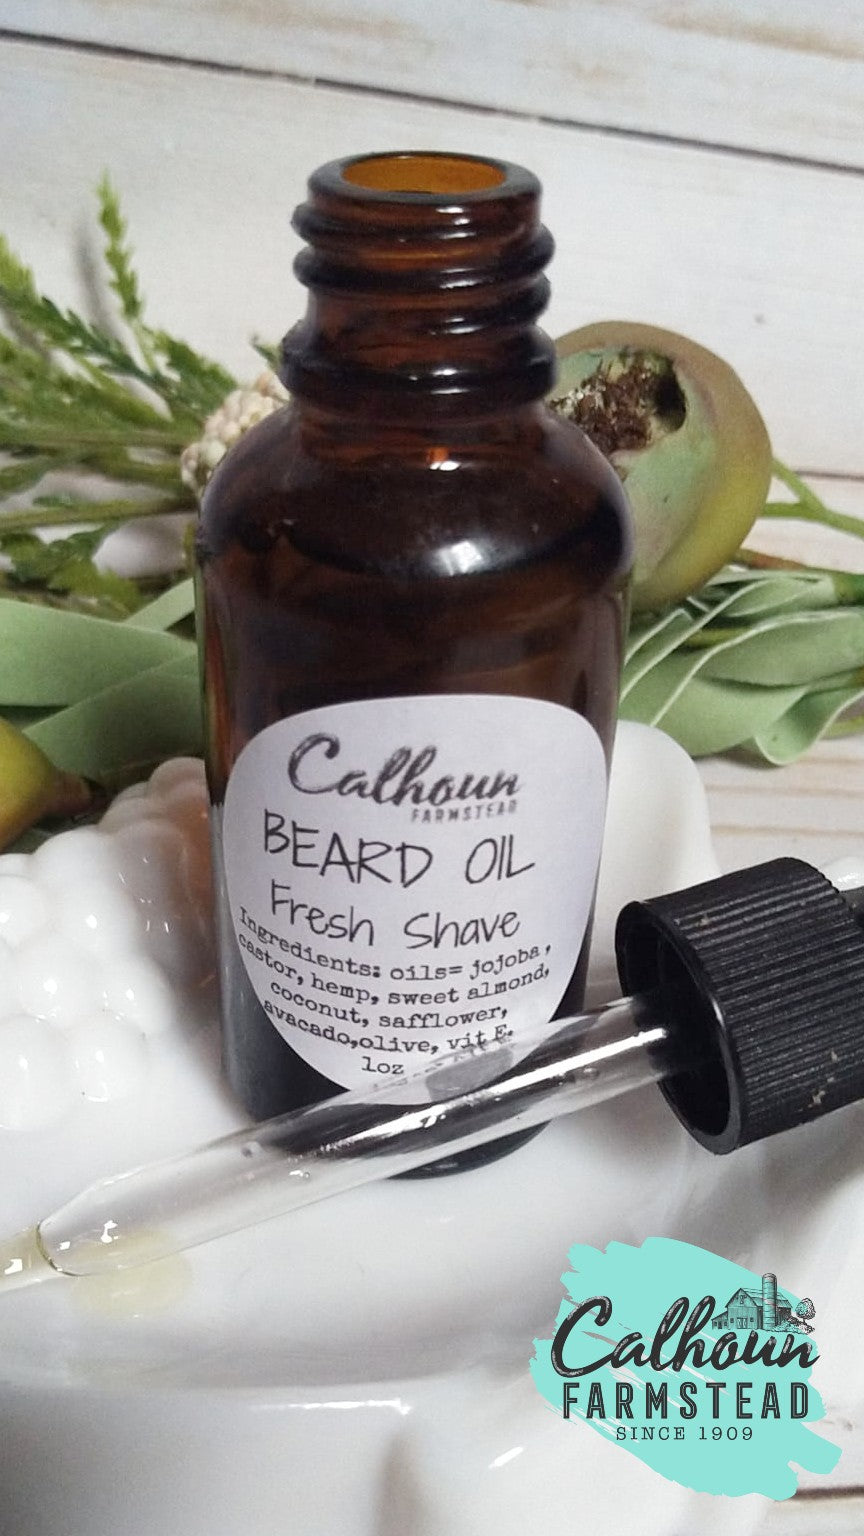 Beard oil for beard care and facial hair.